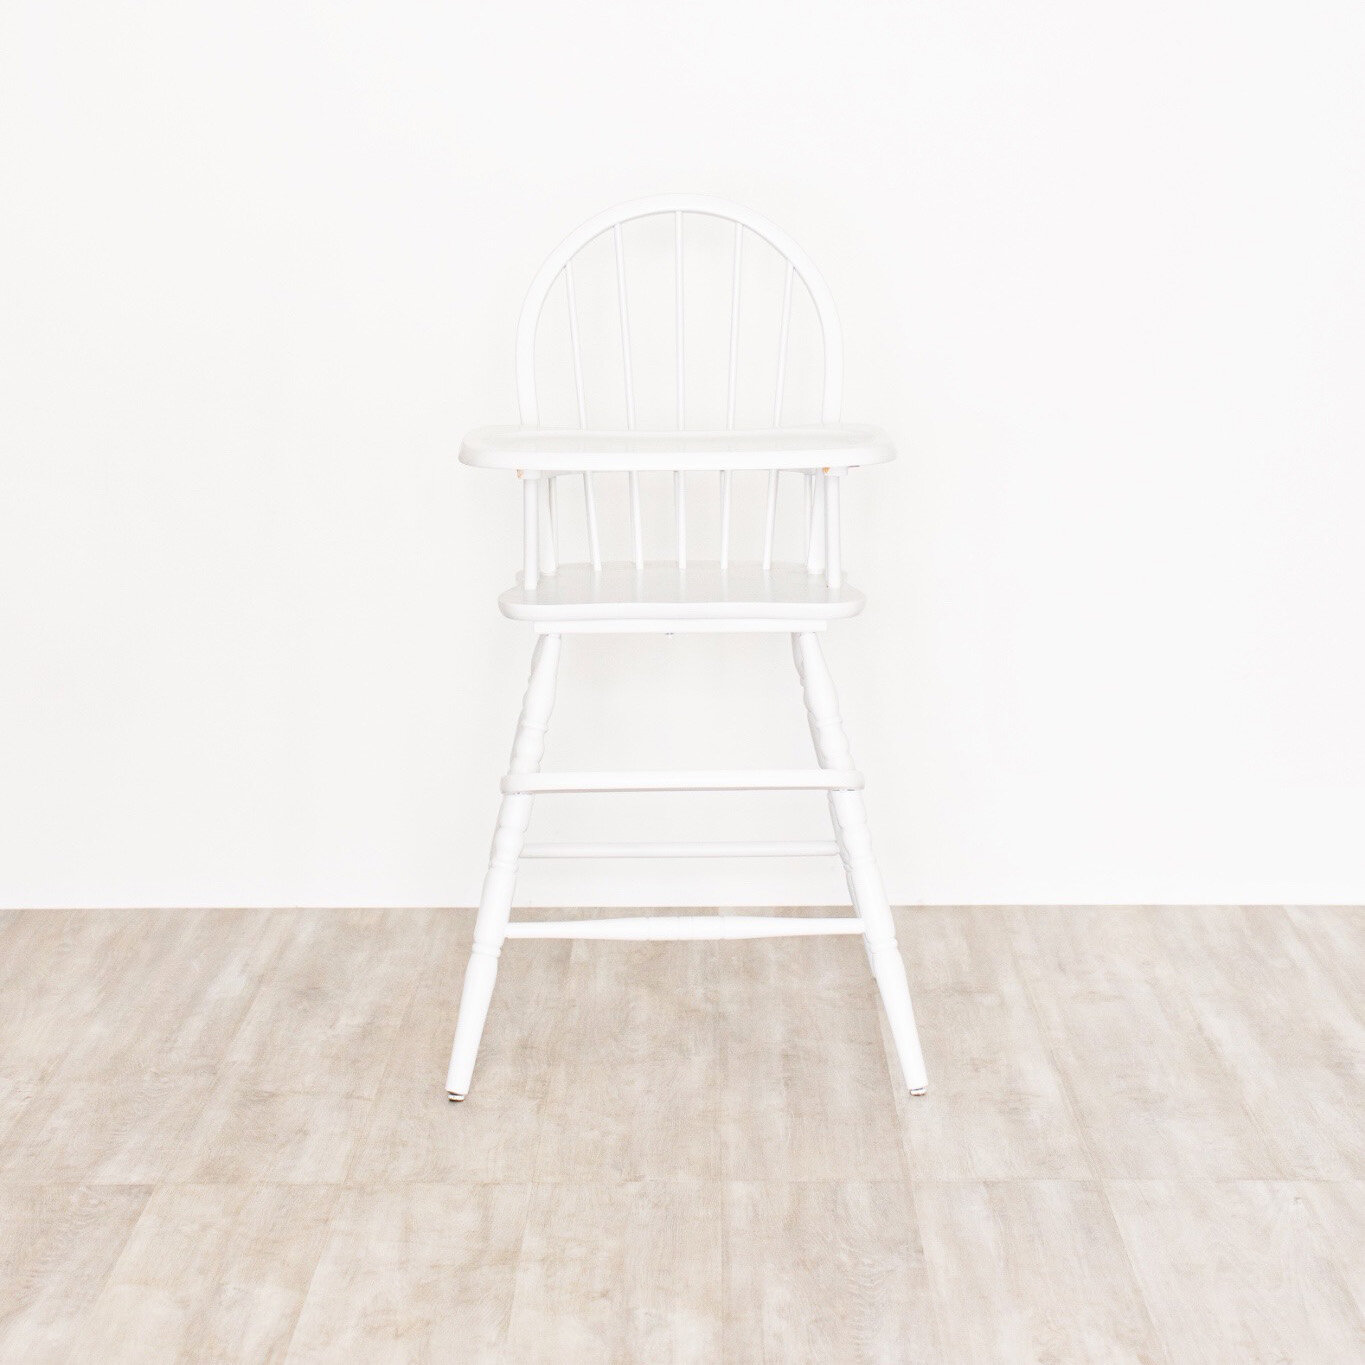 Studio Chairs -3.jpg